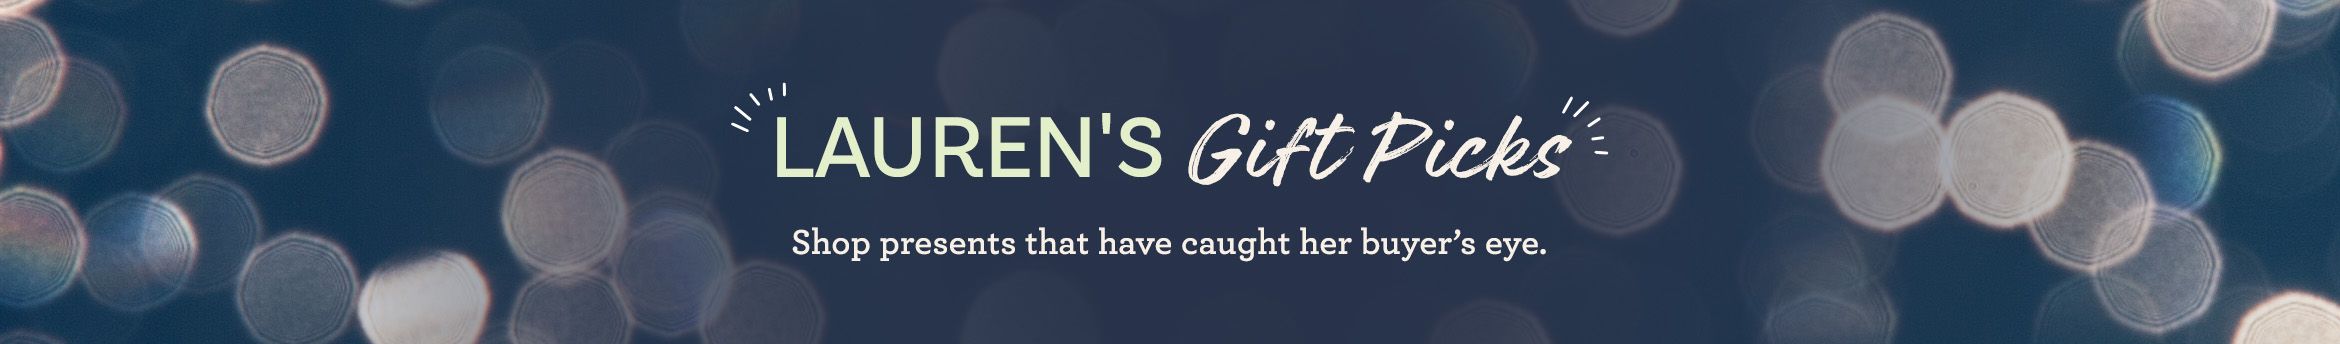 Lauren's Gift Picks Shop presents that have caught her buyer's eye.